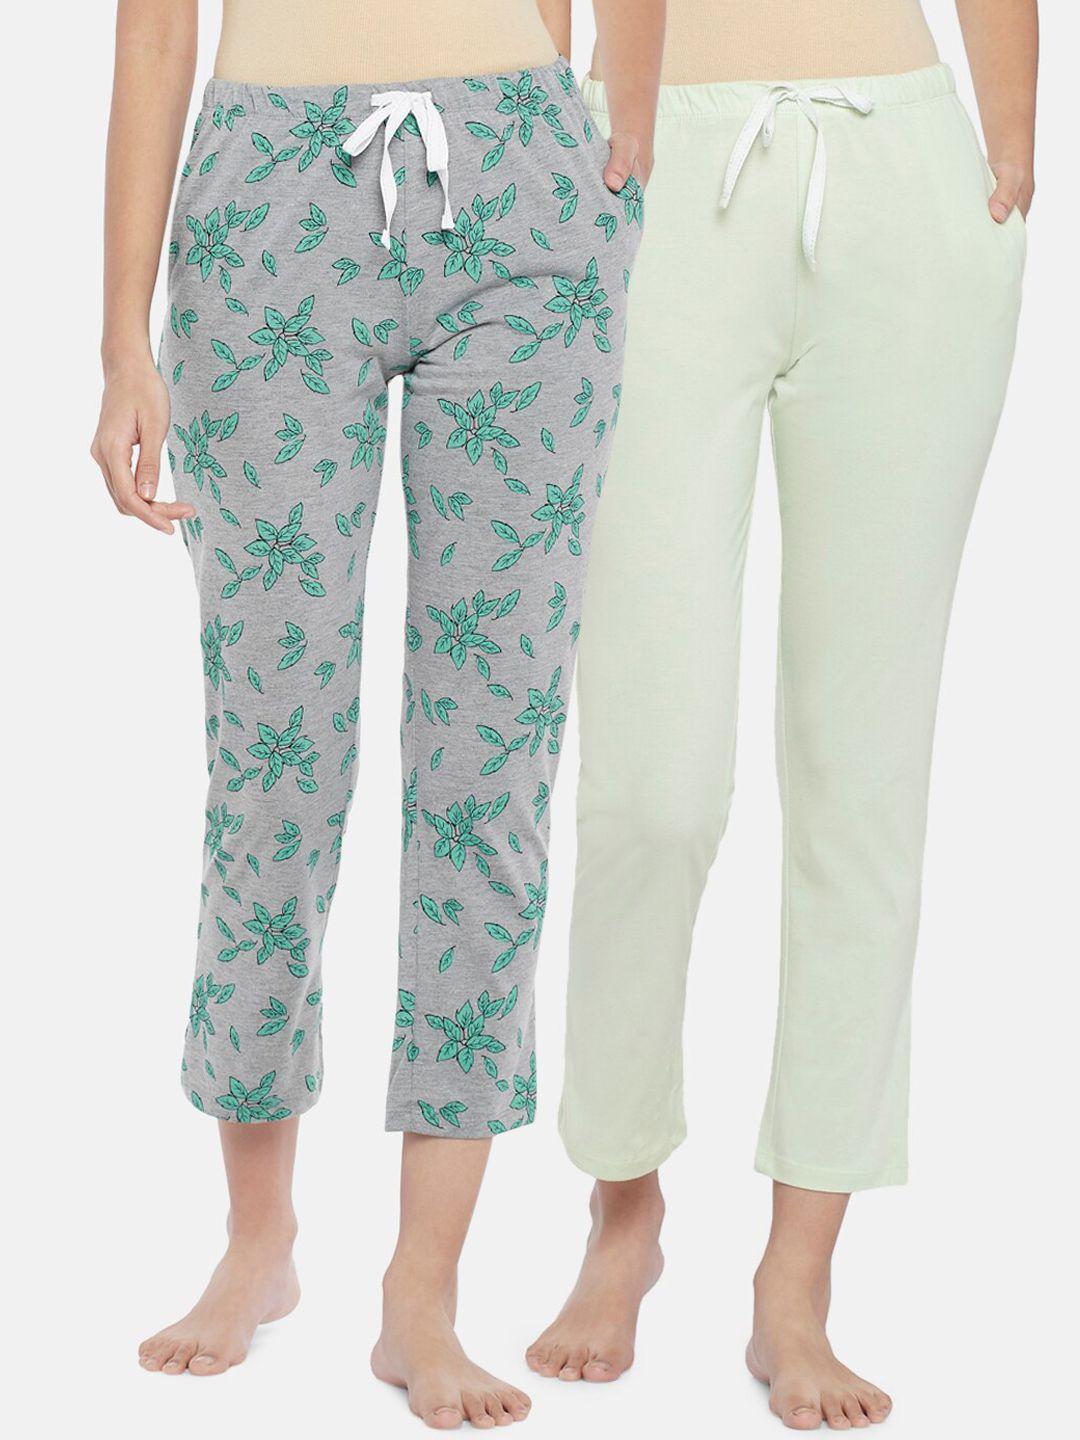 dreamz by pantaloons women set of 2 grey & green printed cotton lounge pants